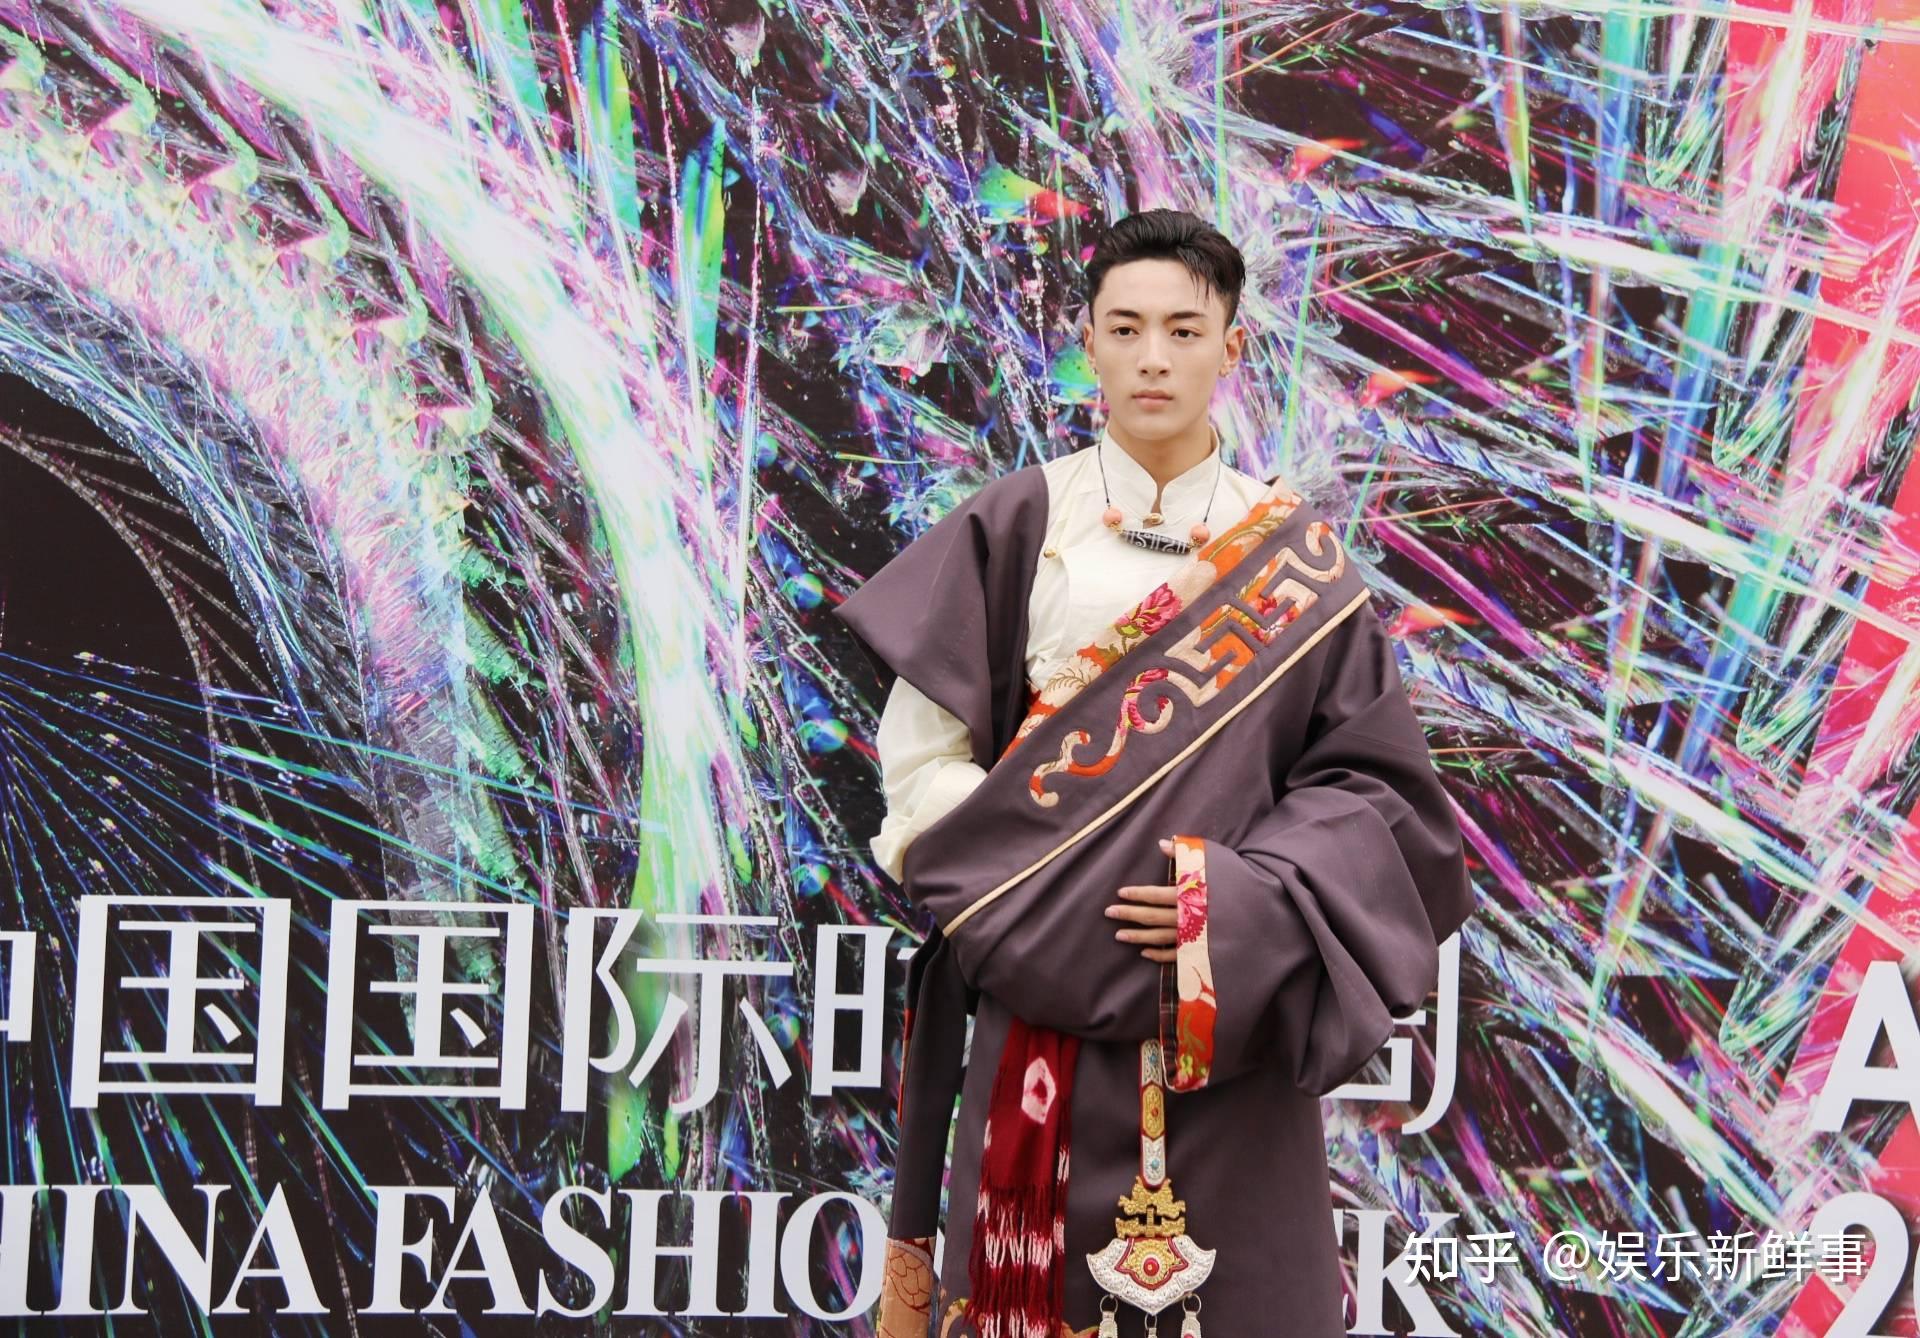 来自四川卫视《藏风美少年》的两位少年布瓦和花丹身着藏族传统服饰